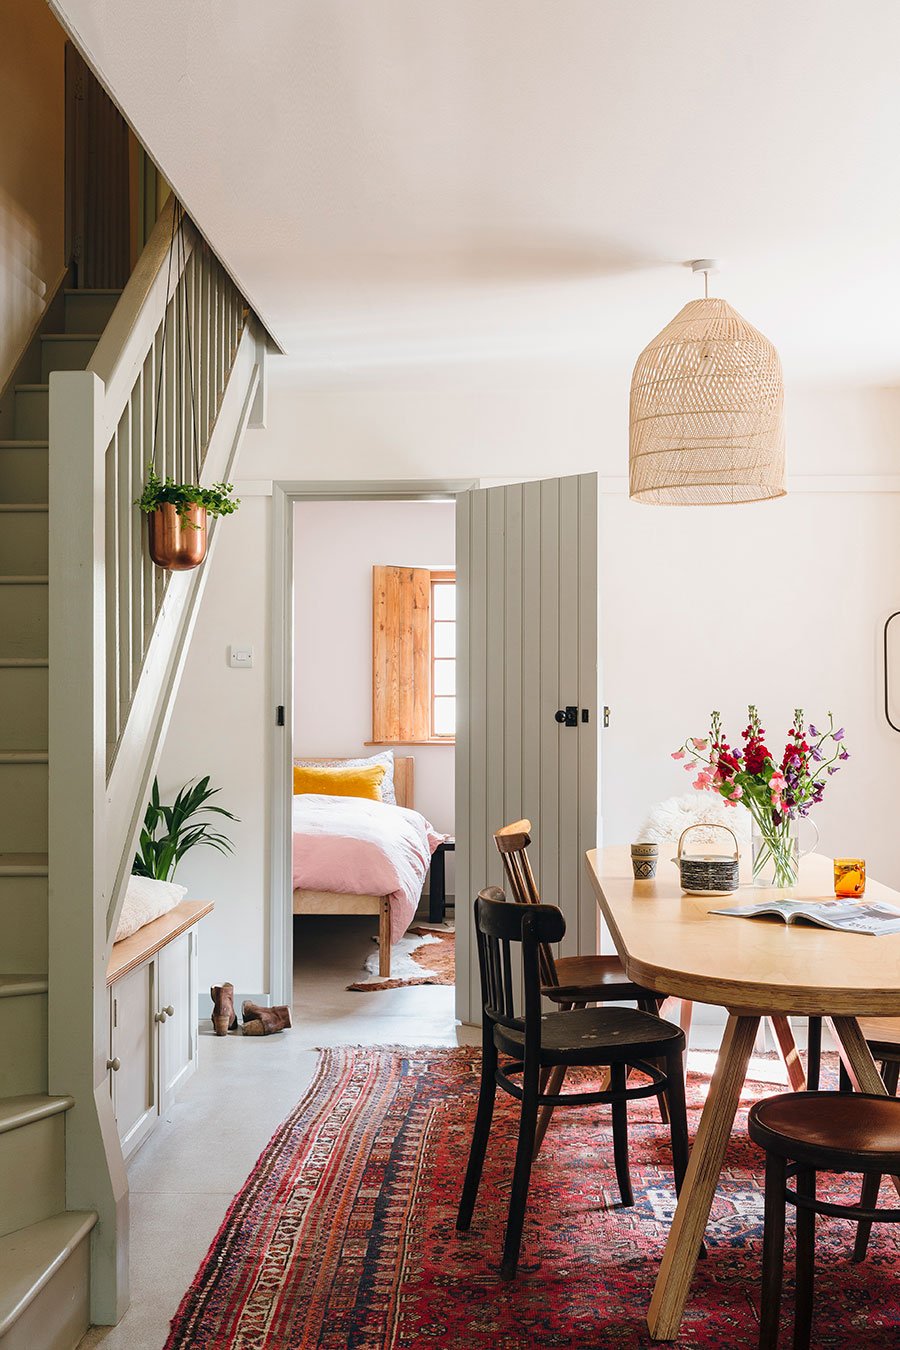 airbnb-dorset-steps-barn-2.jpg